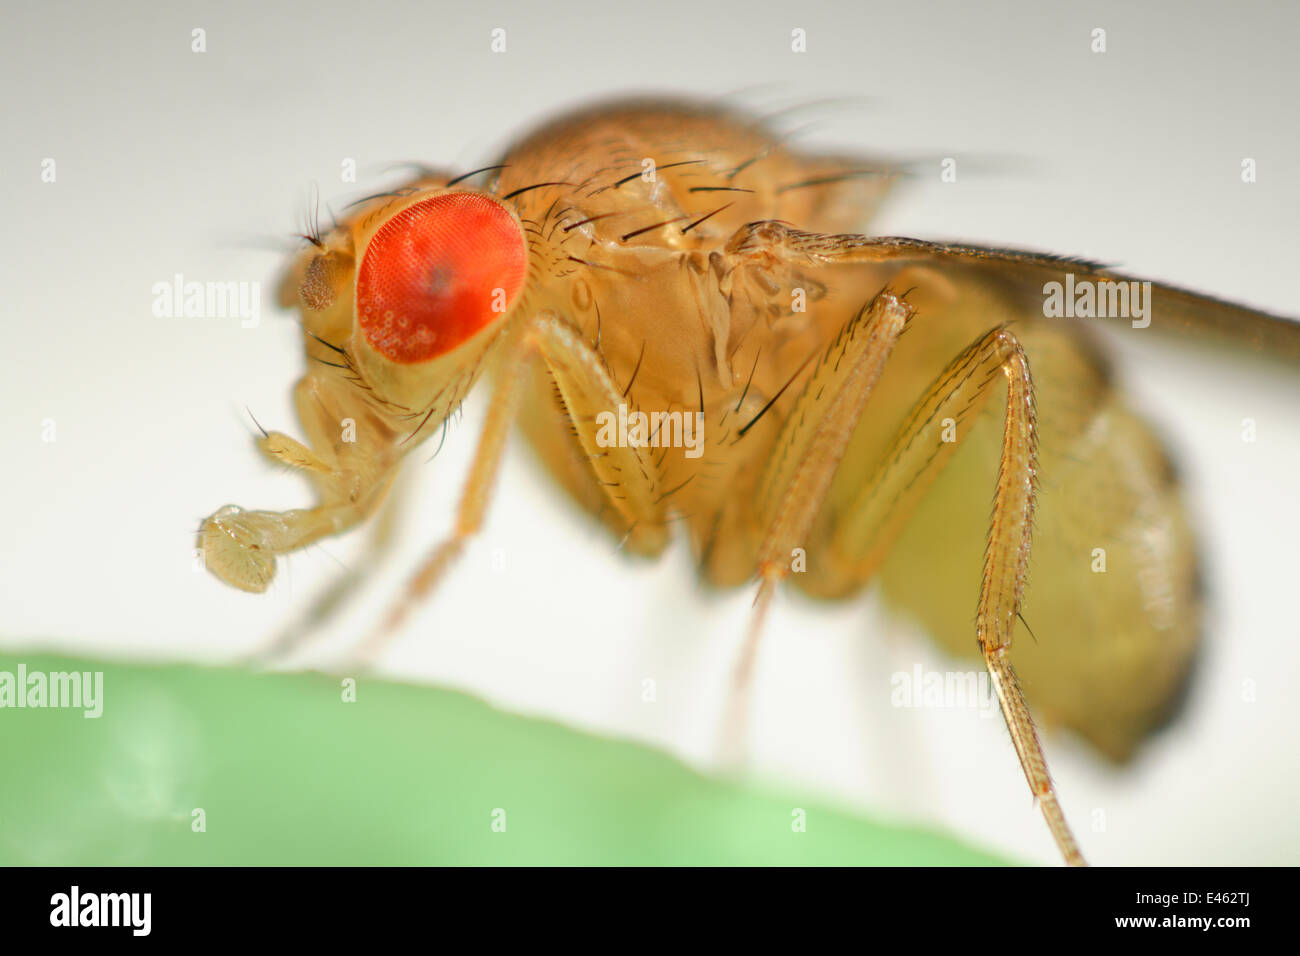 Commune sauvage mouche des fruits (Drosophila melanogaster) Drosophila Vienne Centre de RNAi, Institut de Pathologie Moléculaire, Autriche [FOCUS] d'empilage Banque D'Images